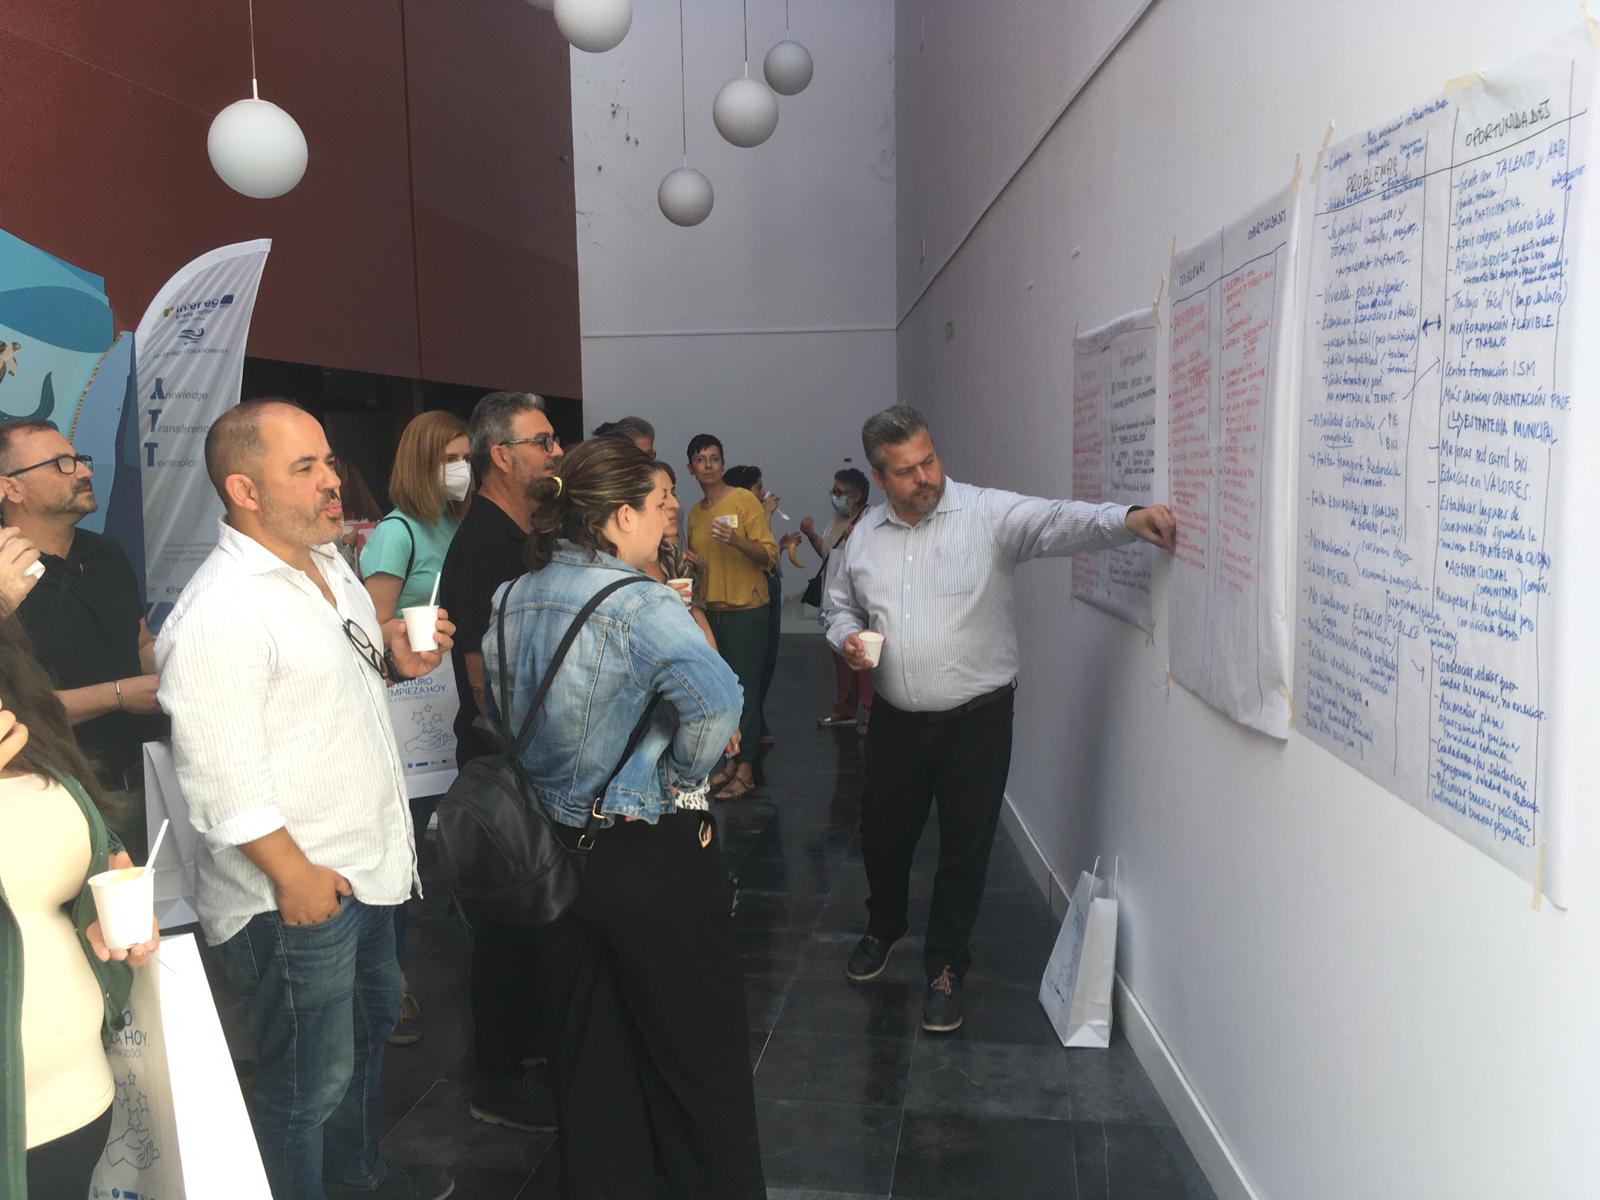 La participación ciudadana, clave para diseño de la Agenda Urbana de Isla Cristina